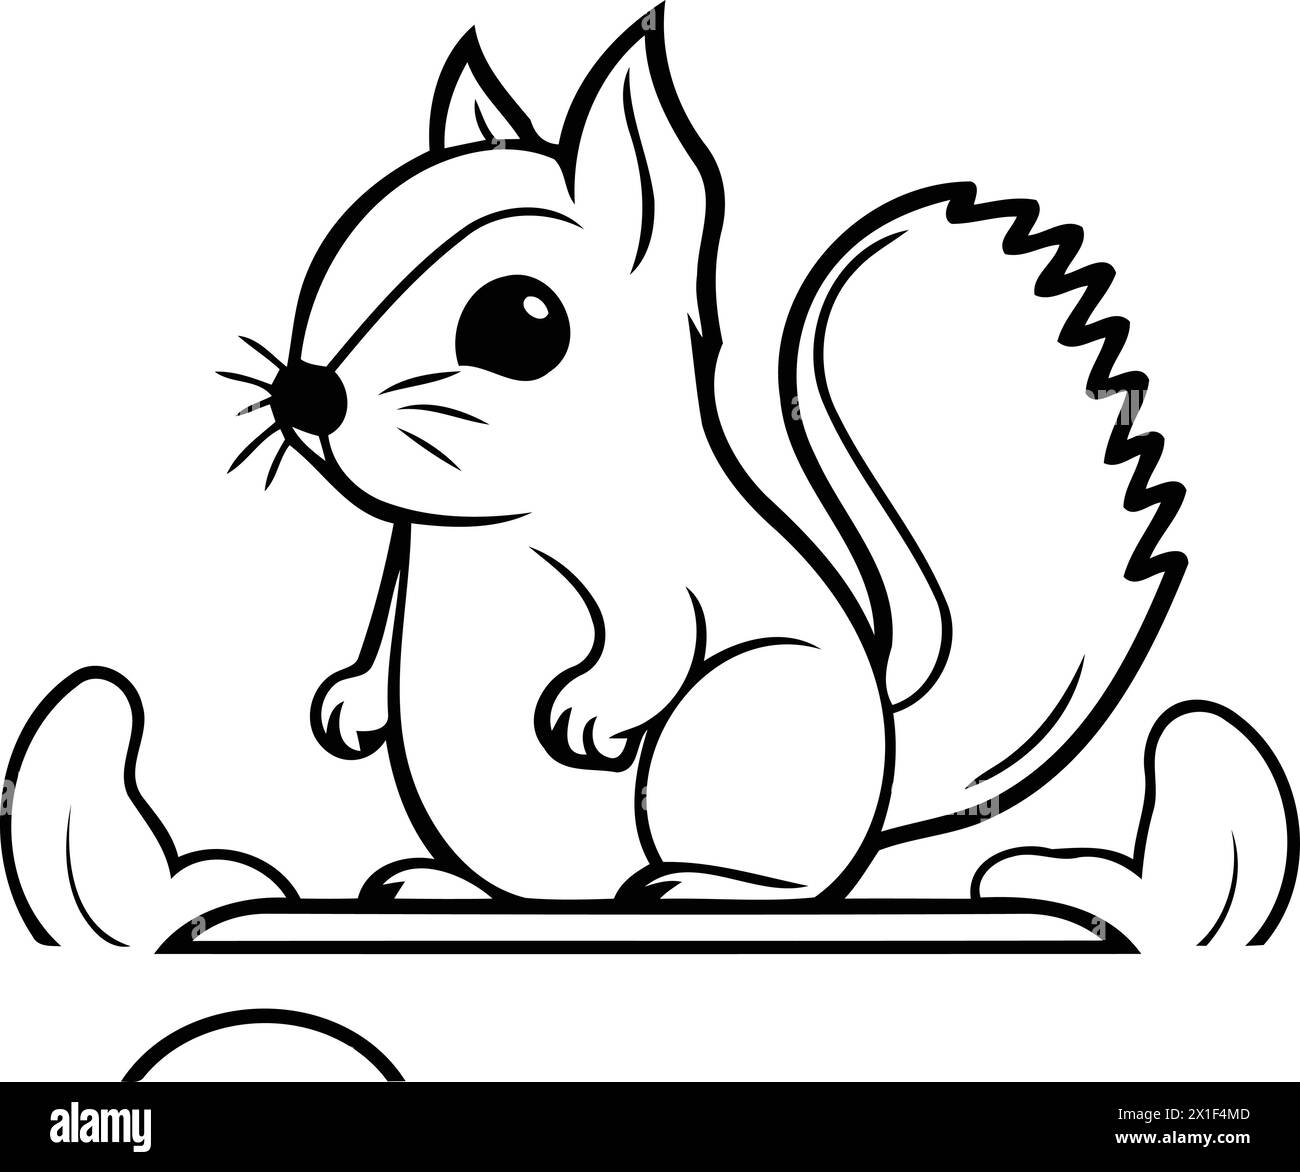 Eichhörnchen Zeichentrickfigur. Vektor-Illustration eines süßen kleinen Chipmunks. Stock Vektor